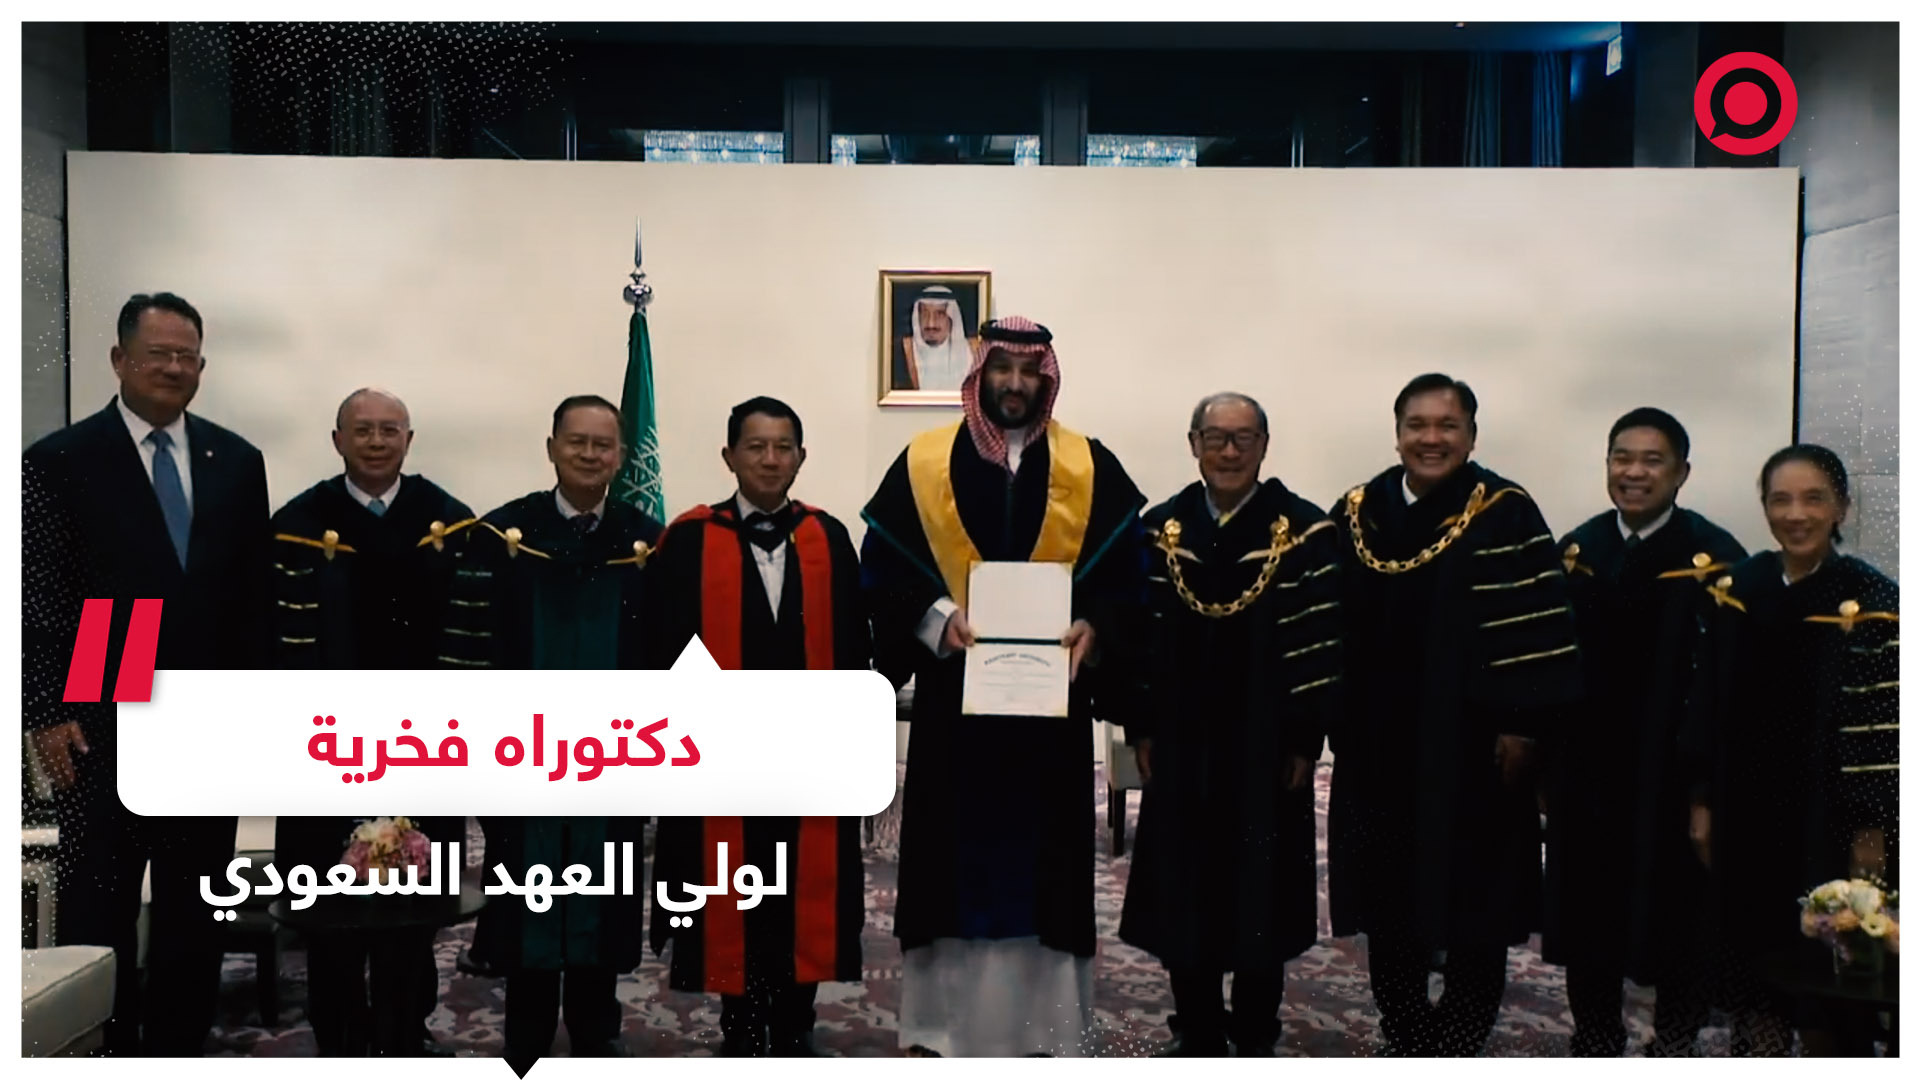 ولي العهد السعودي الأمير محمد بن سلمان يتسلم شهادة الدكتوراه الفخرية